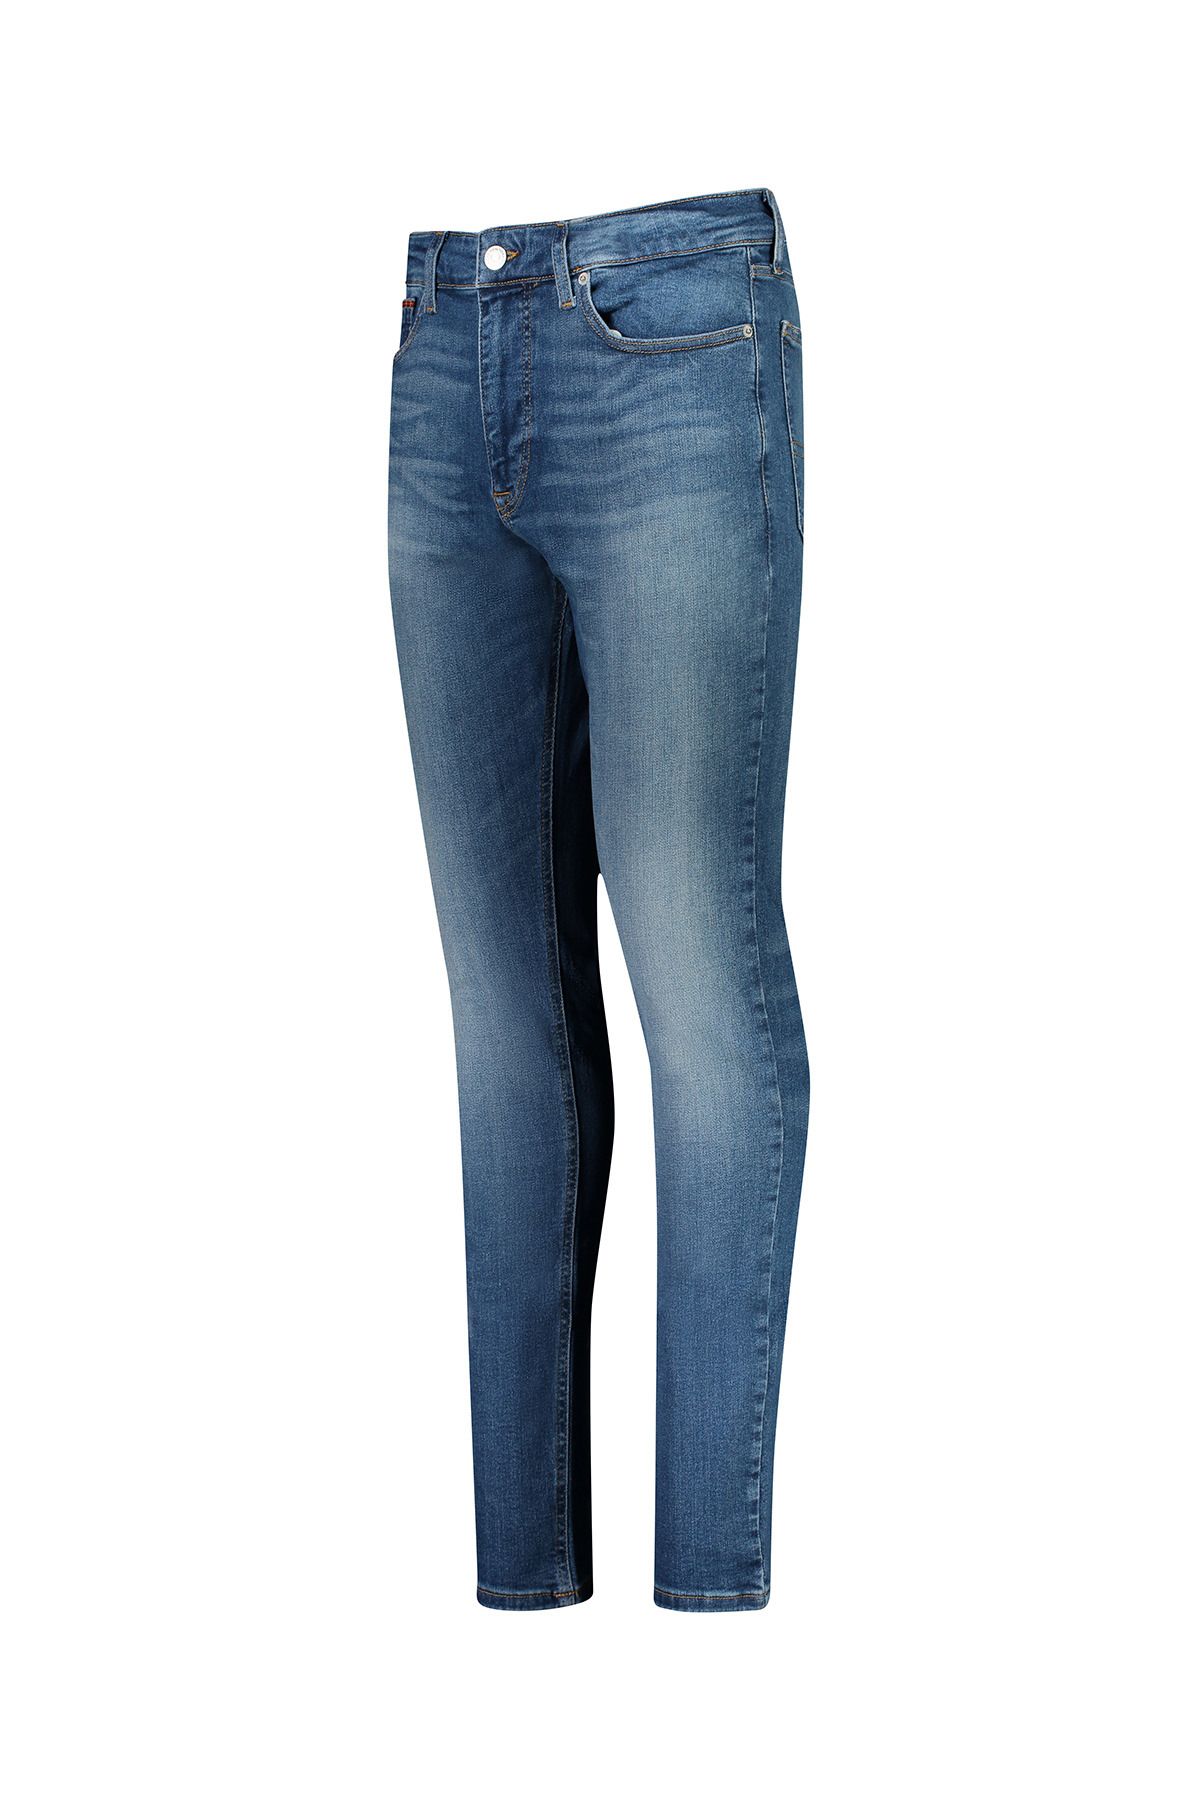 Tommy Jeans جین مردانه (کد مدل: DM0DM16636)